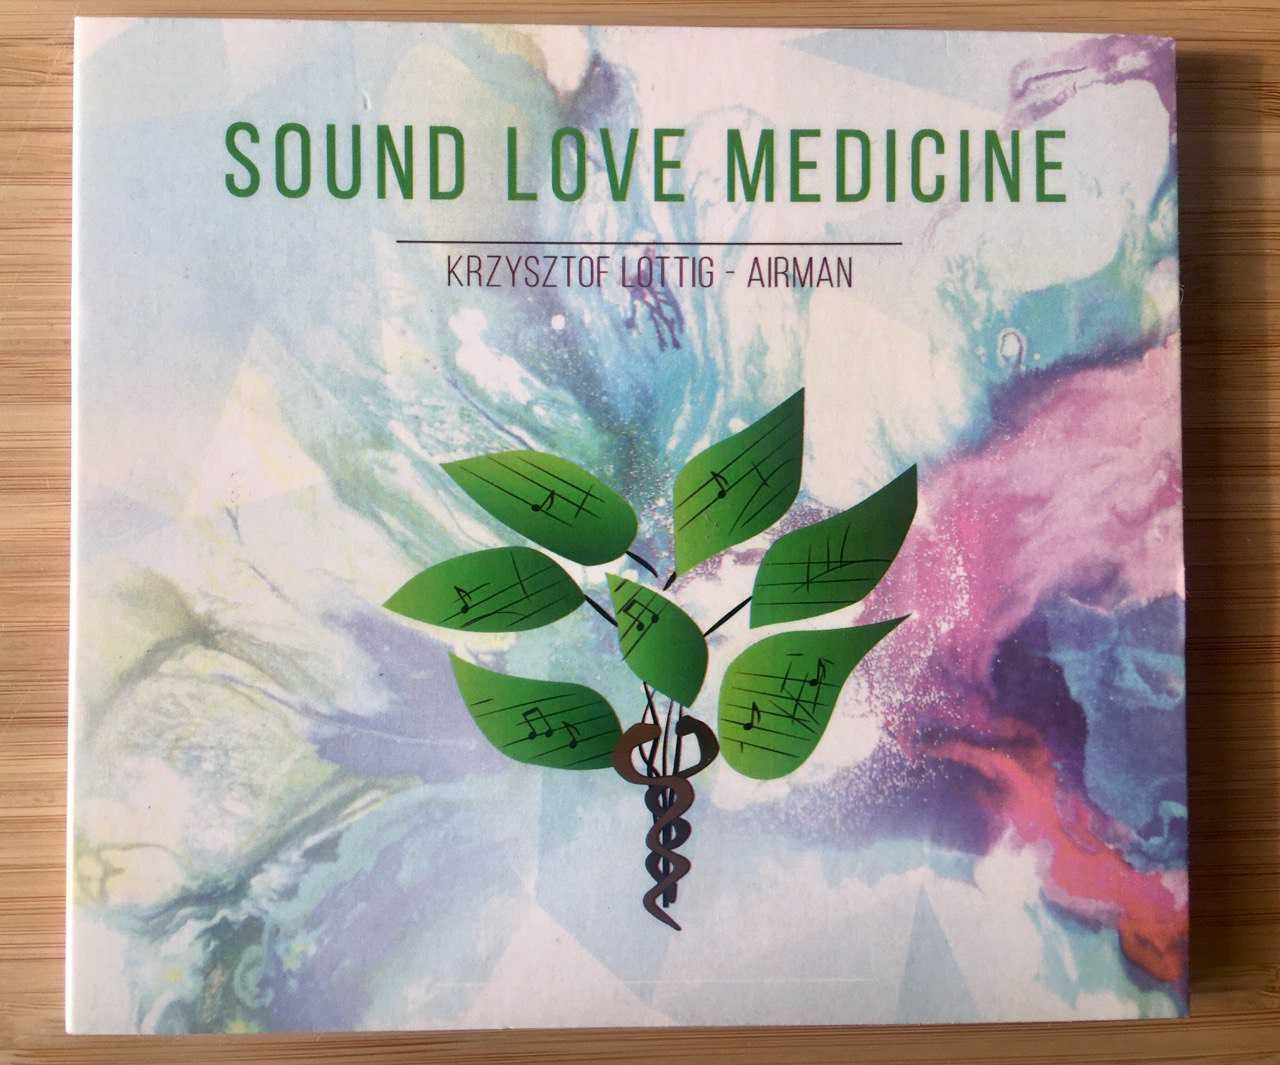 Sound Love Medicine, Krzysztof Lottig - Airman